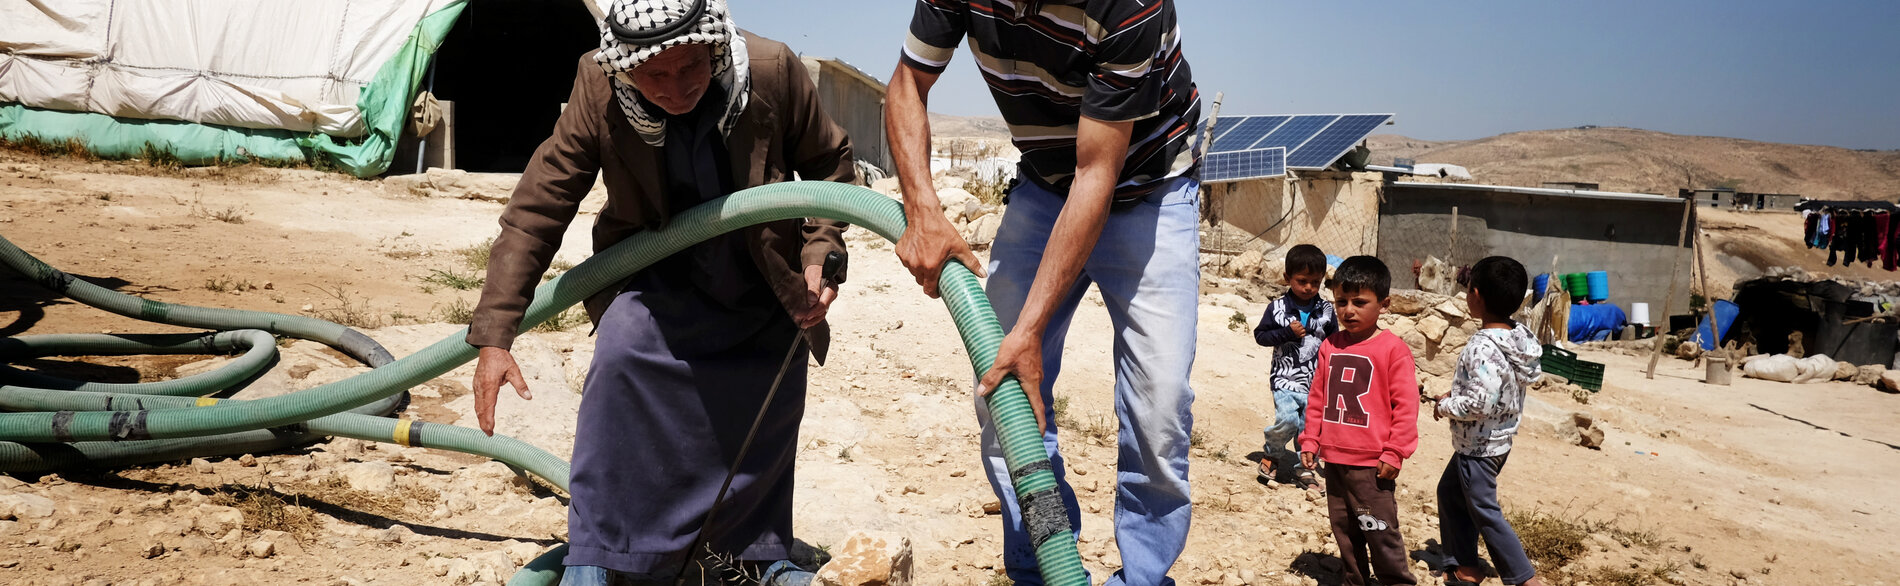 فلسطينيون في تجمّع سكاني في المنطقة (ج) بالضفة الغربية غير موصولين بشبكة المياه. صورة أرشيفية من مكتب الأمم المتحدة لتنسيق الشؤون الإنسانية